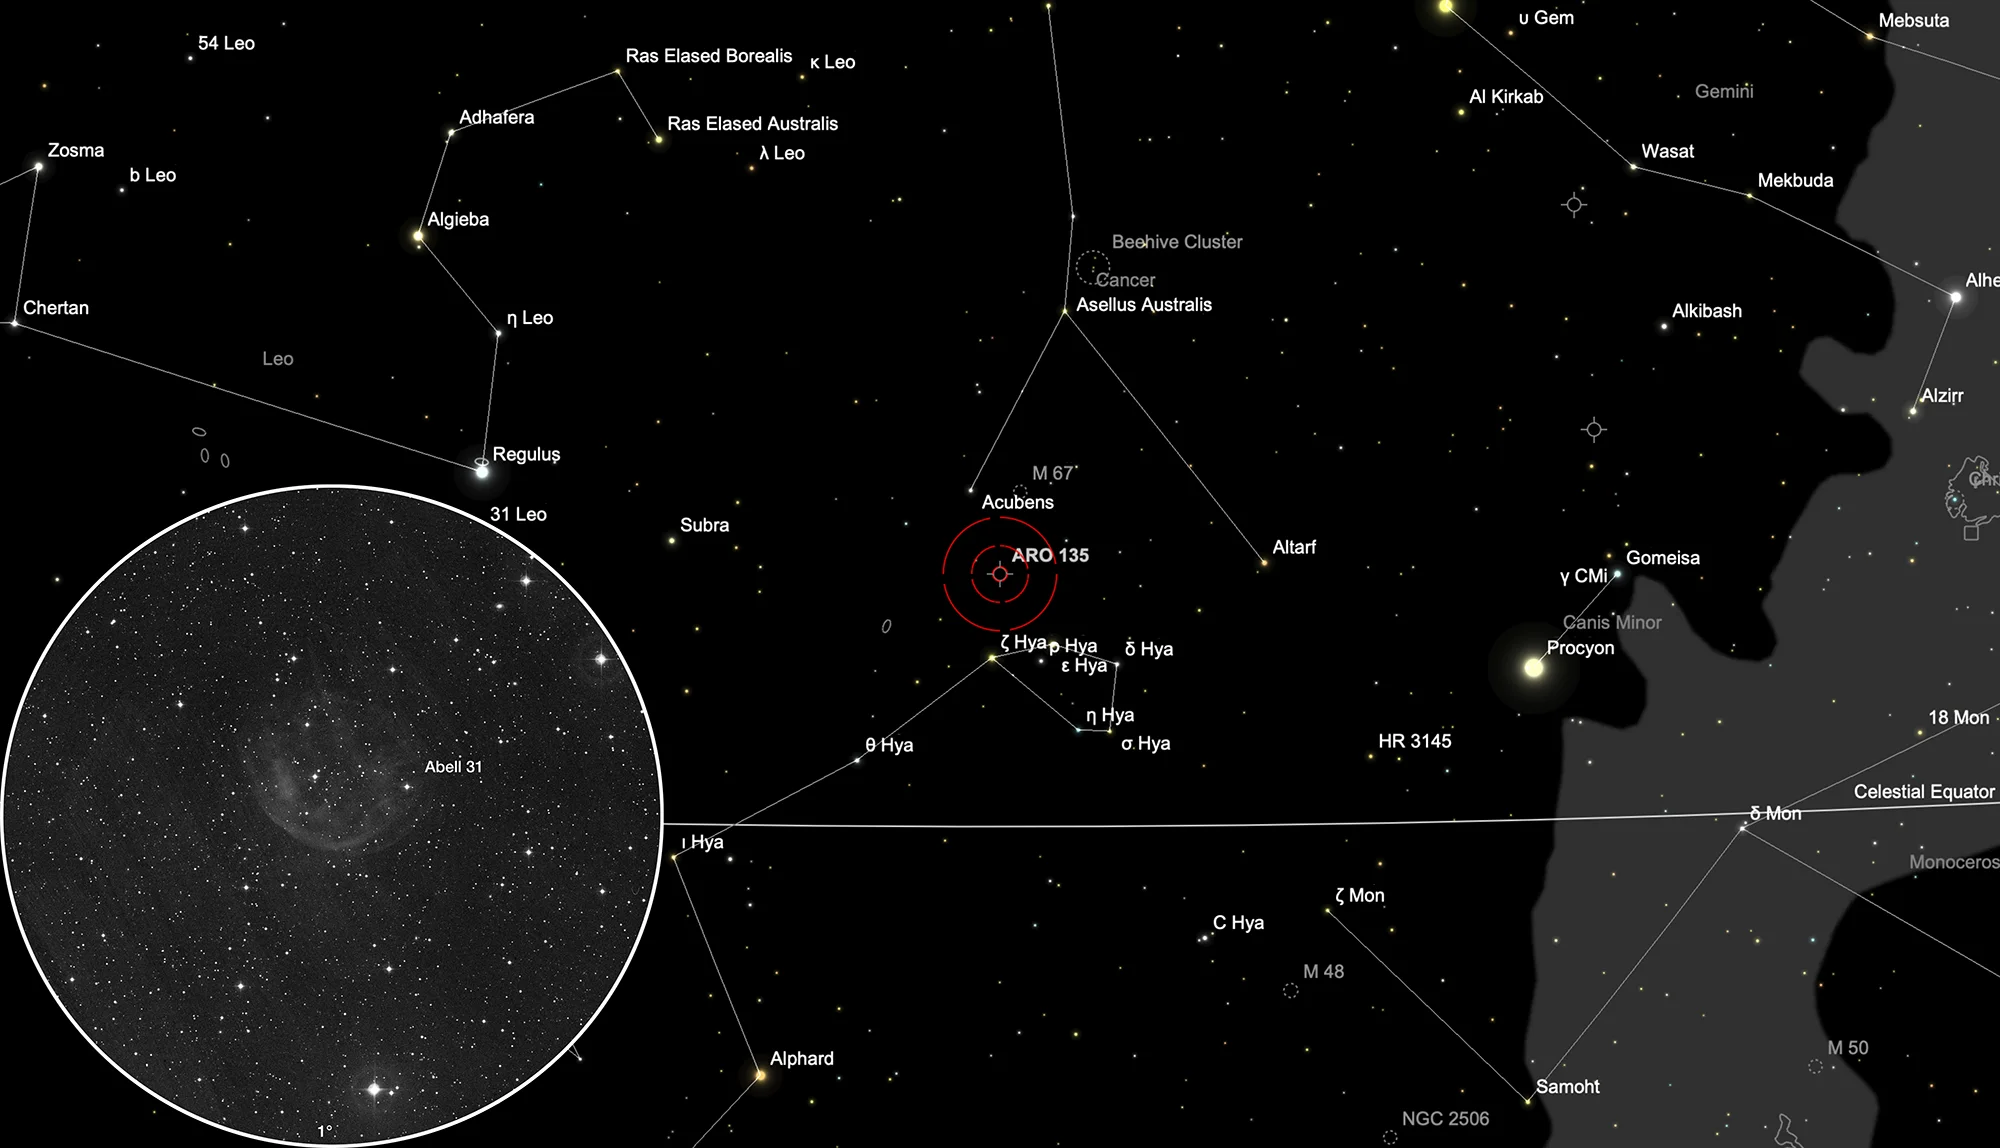 Finder Chart Planetary Nebula Abell 31